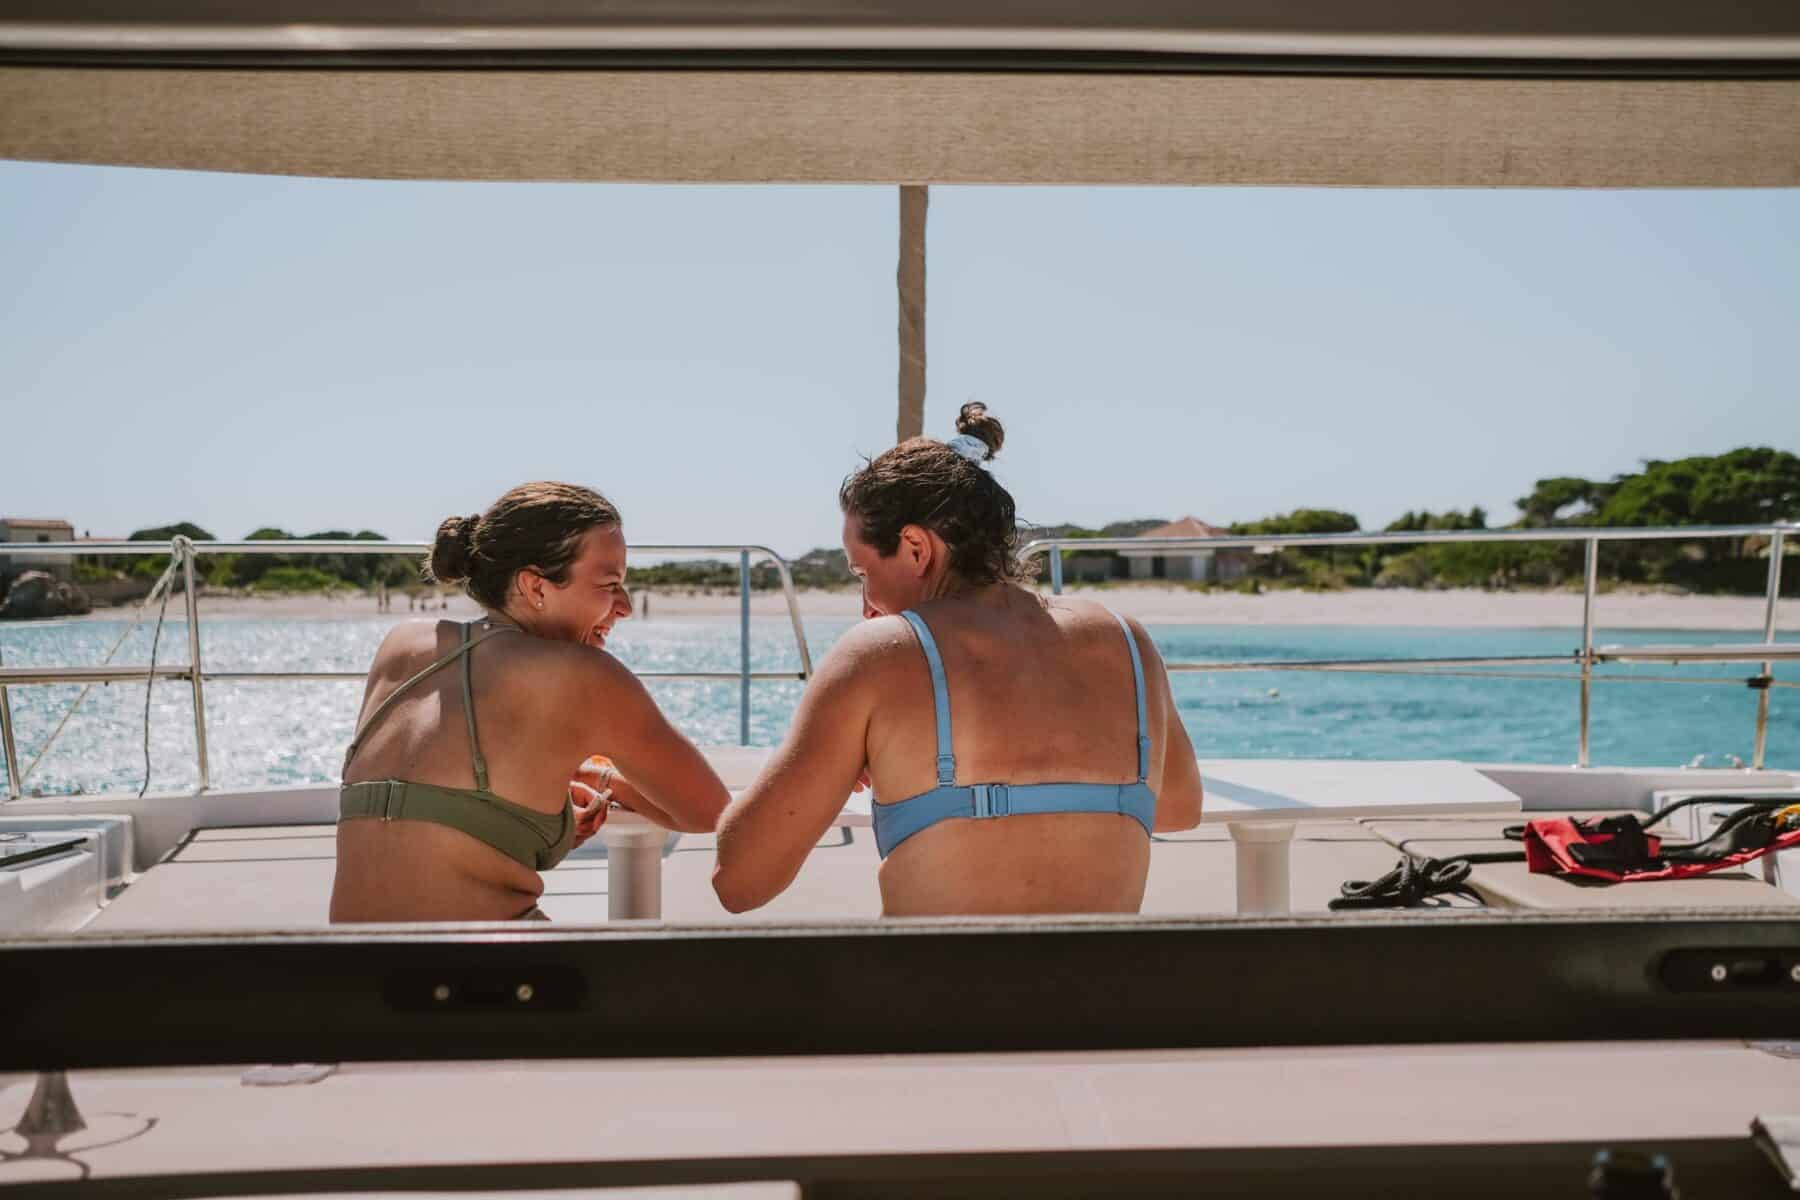 Zwei Personen in Badeanzügen sitzen und unterhalten sich auf dem Heck eines Segelboots und blicken auf ein ruhiges blaues Meer unter einem klaren Himmel.